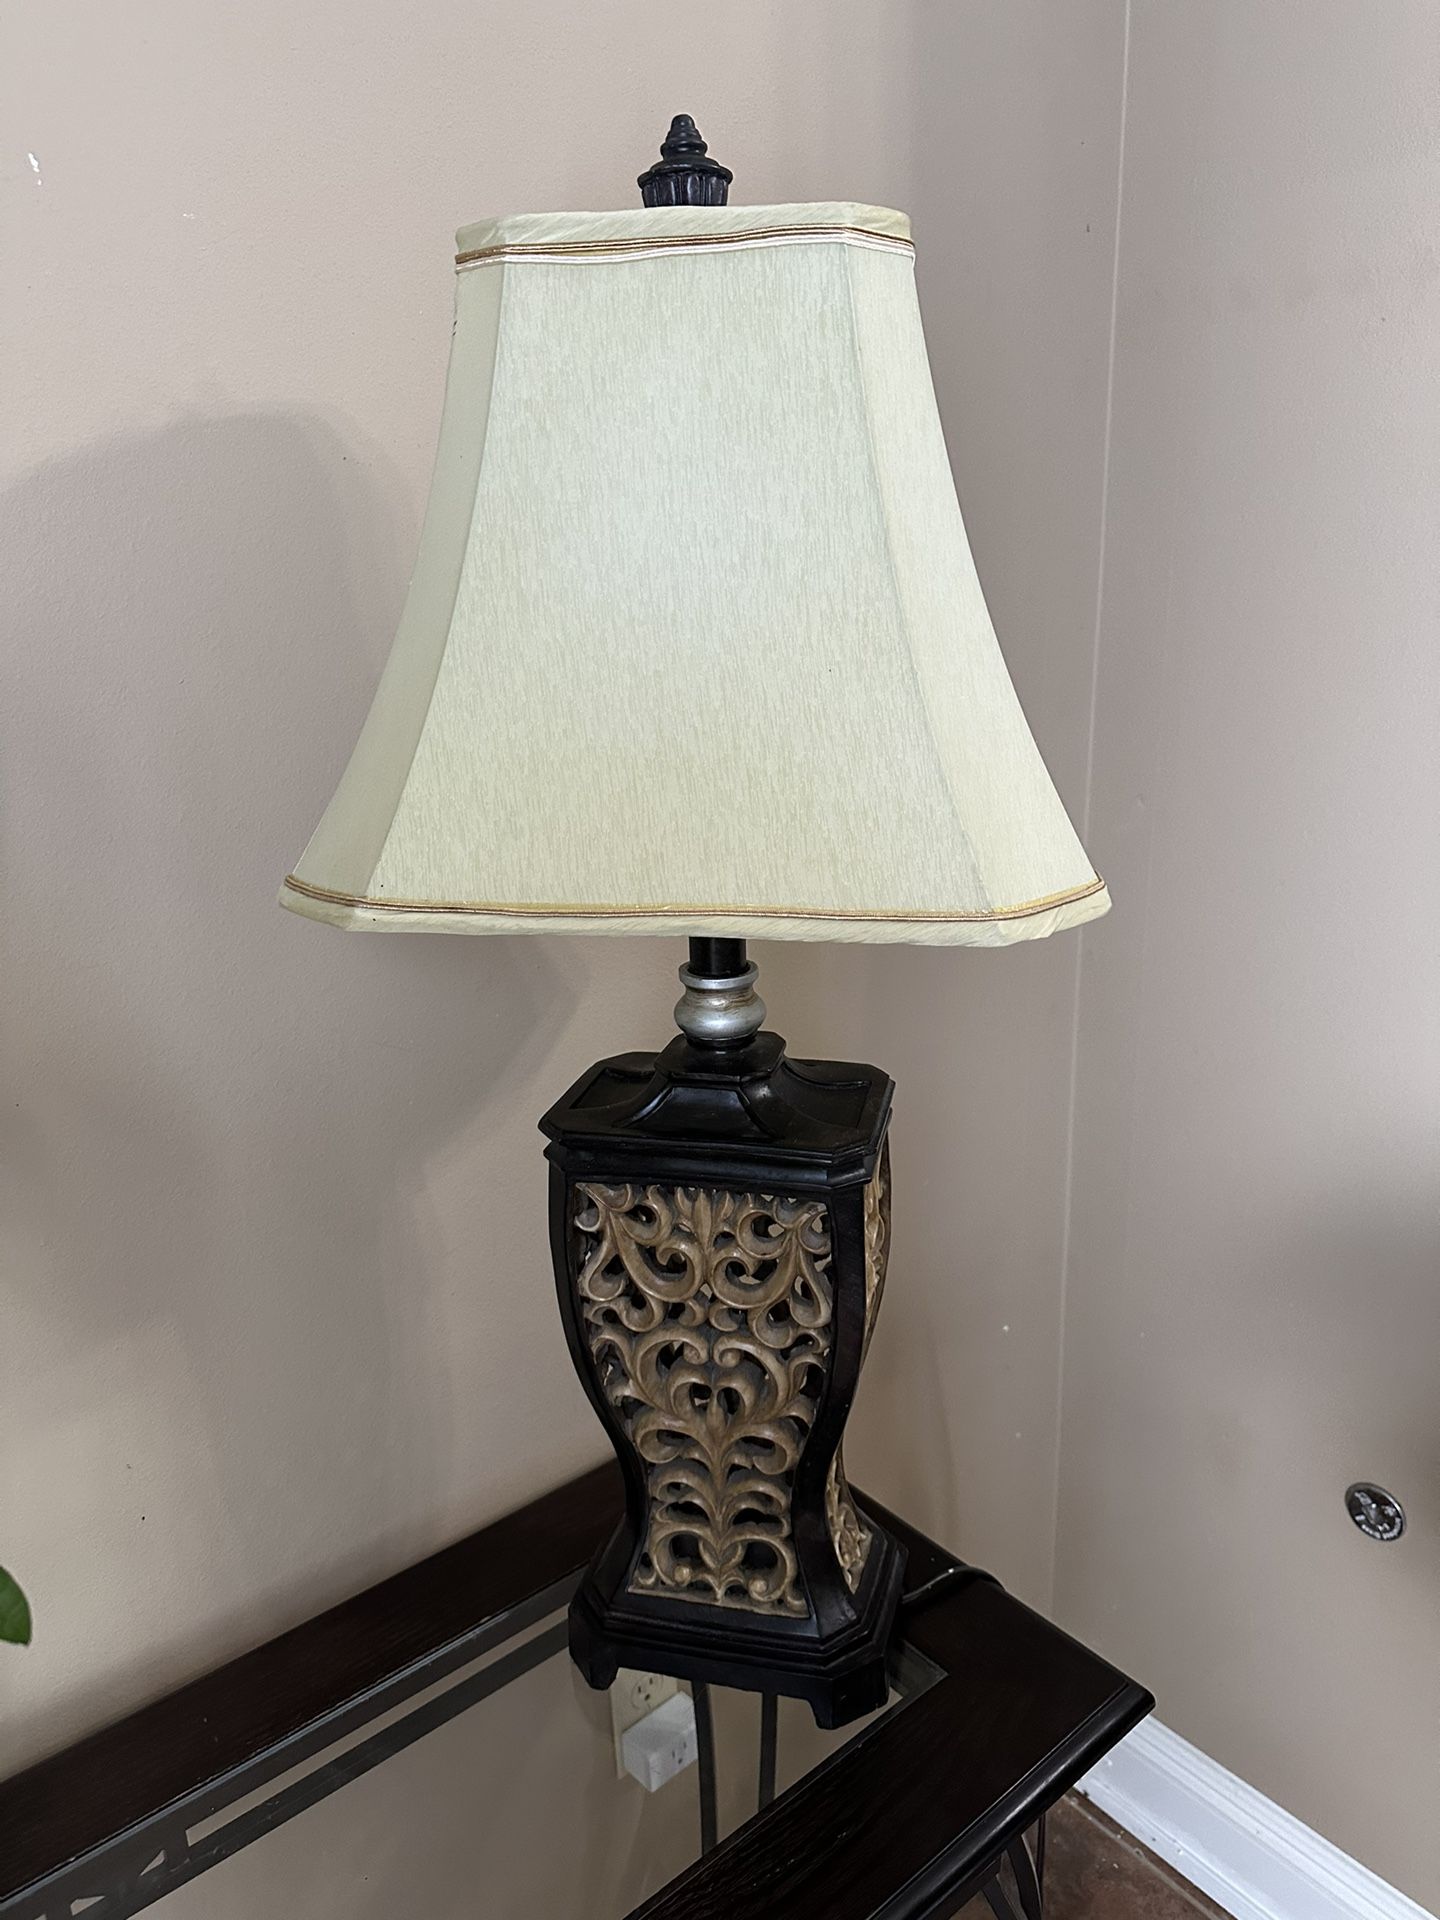 $10 Lamp/Lámpara 